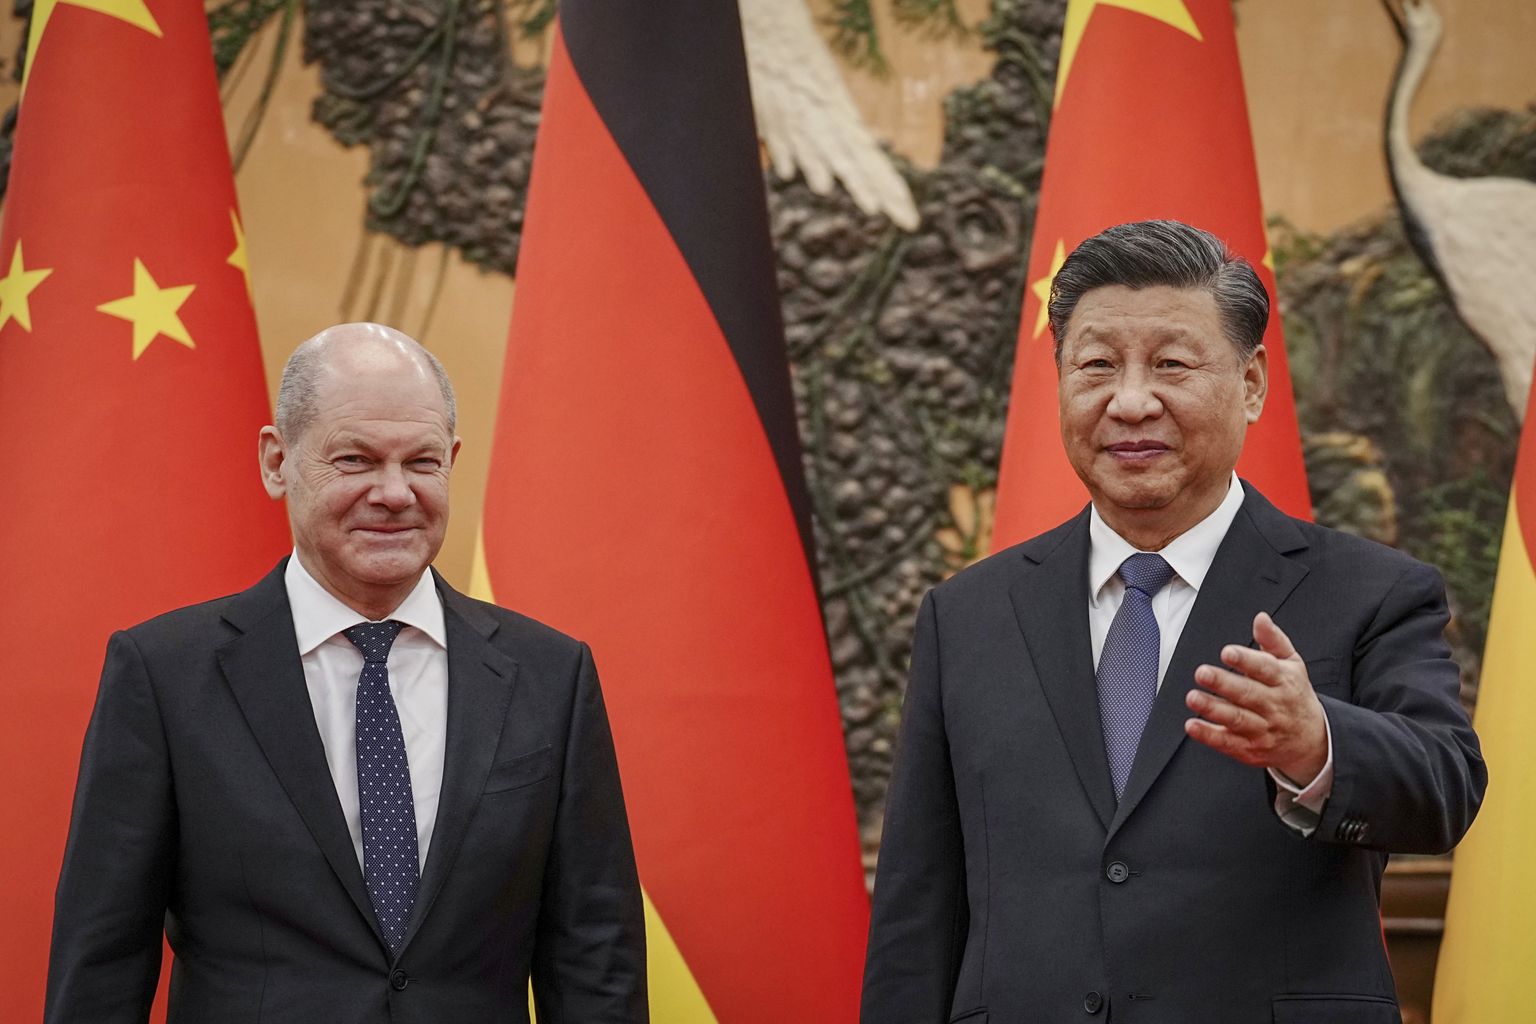 Канцлер Германии Олаф Шольц привез на встречу с лидером Китая Си Цзиньпином немецких бизнесменов. Война Путина в Украине - одна из тем общения лидеров двух важнейших экономик мира. Большой зал народных собраний в Пекине, Китай, 4 ноября 2022 года.